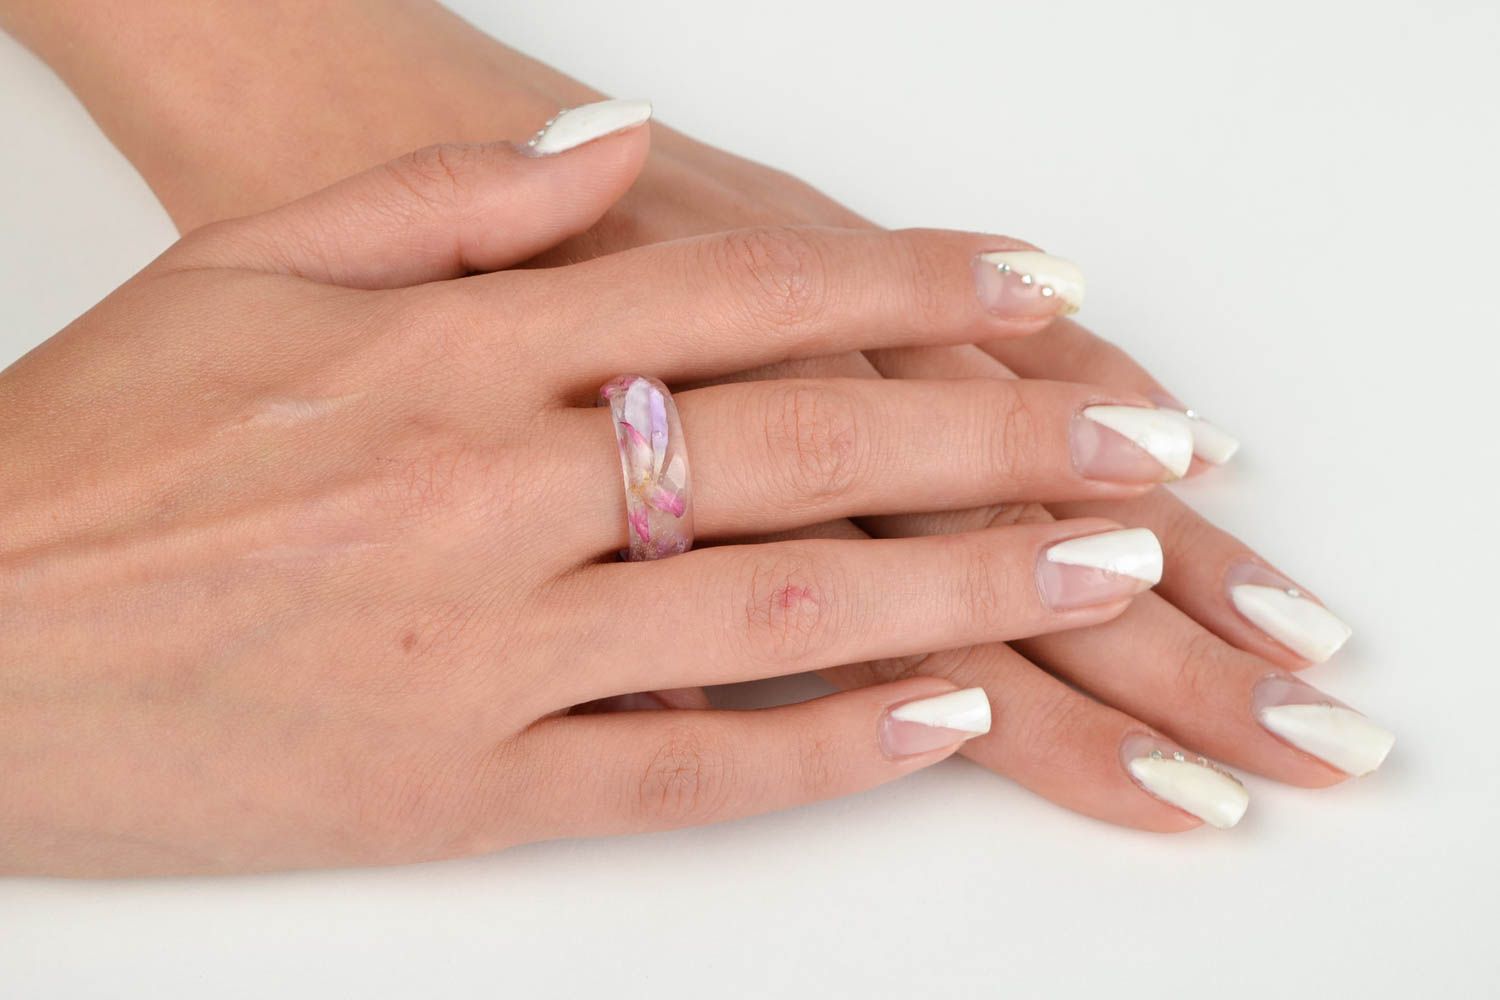 Украшение из эпоксидной смолы ручной работы кольцо с цветами женское кольцо фото 2